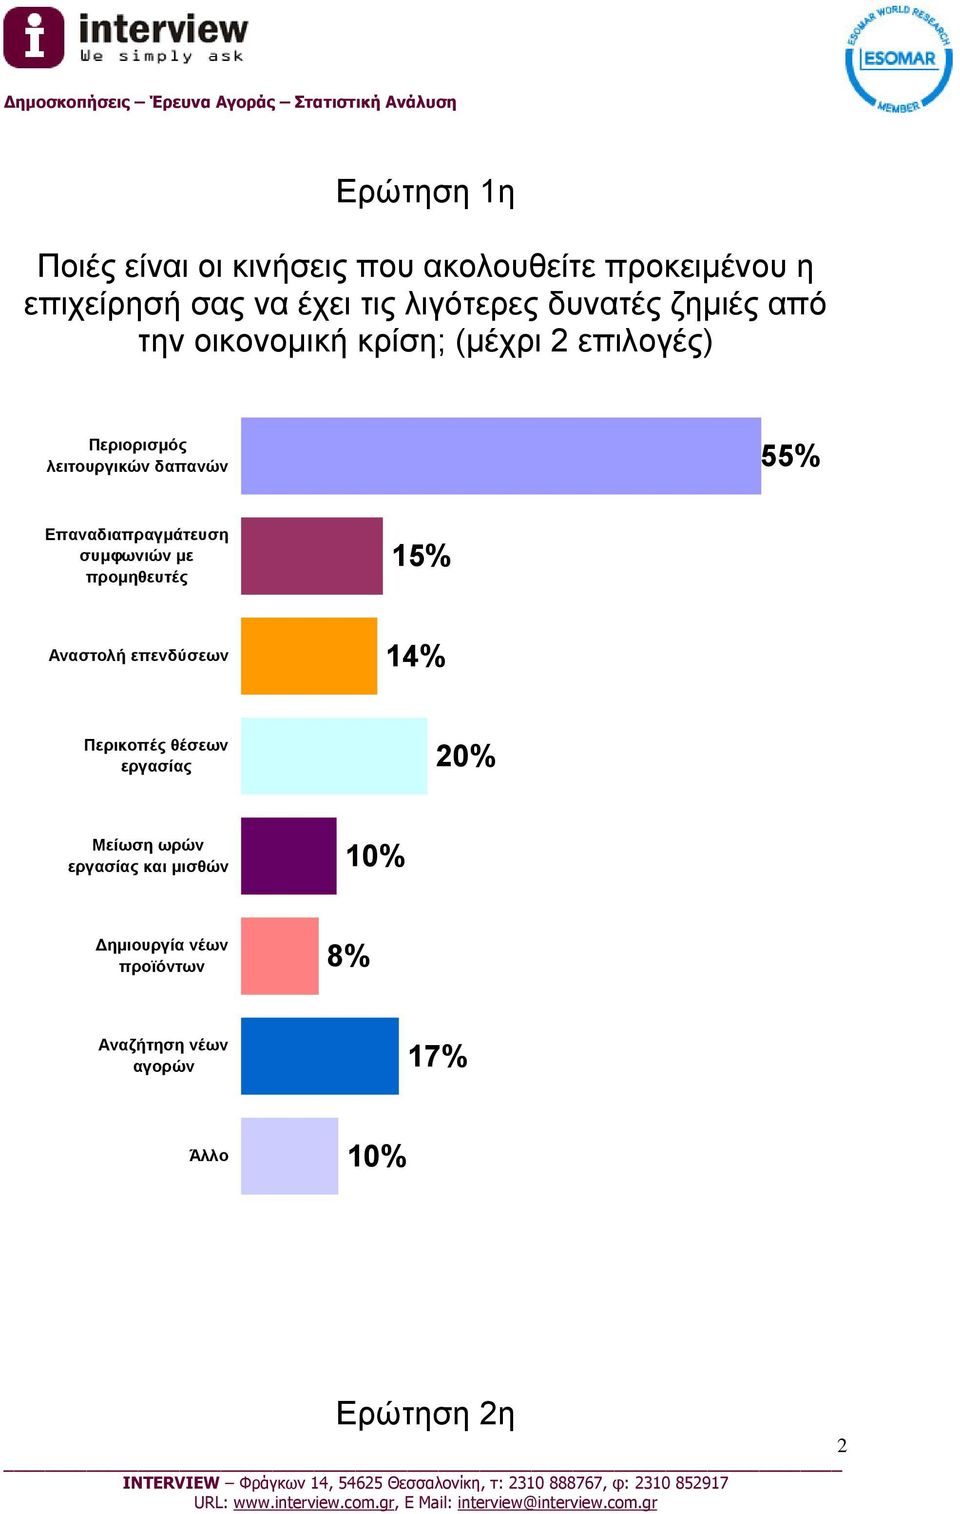 Επαναδιαπραγμάτευση συμφωνιών με προμηθευτές 15% Αναστολή επενδύσεων 14% Περικοπές θέσεων εργασίας 20%